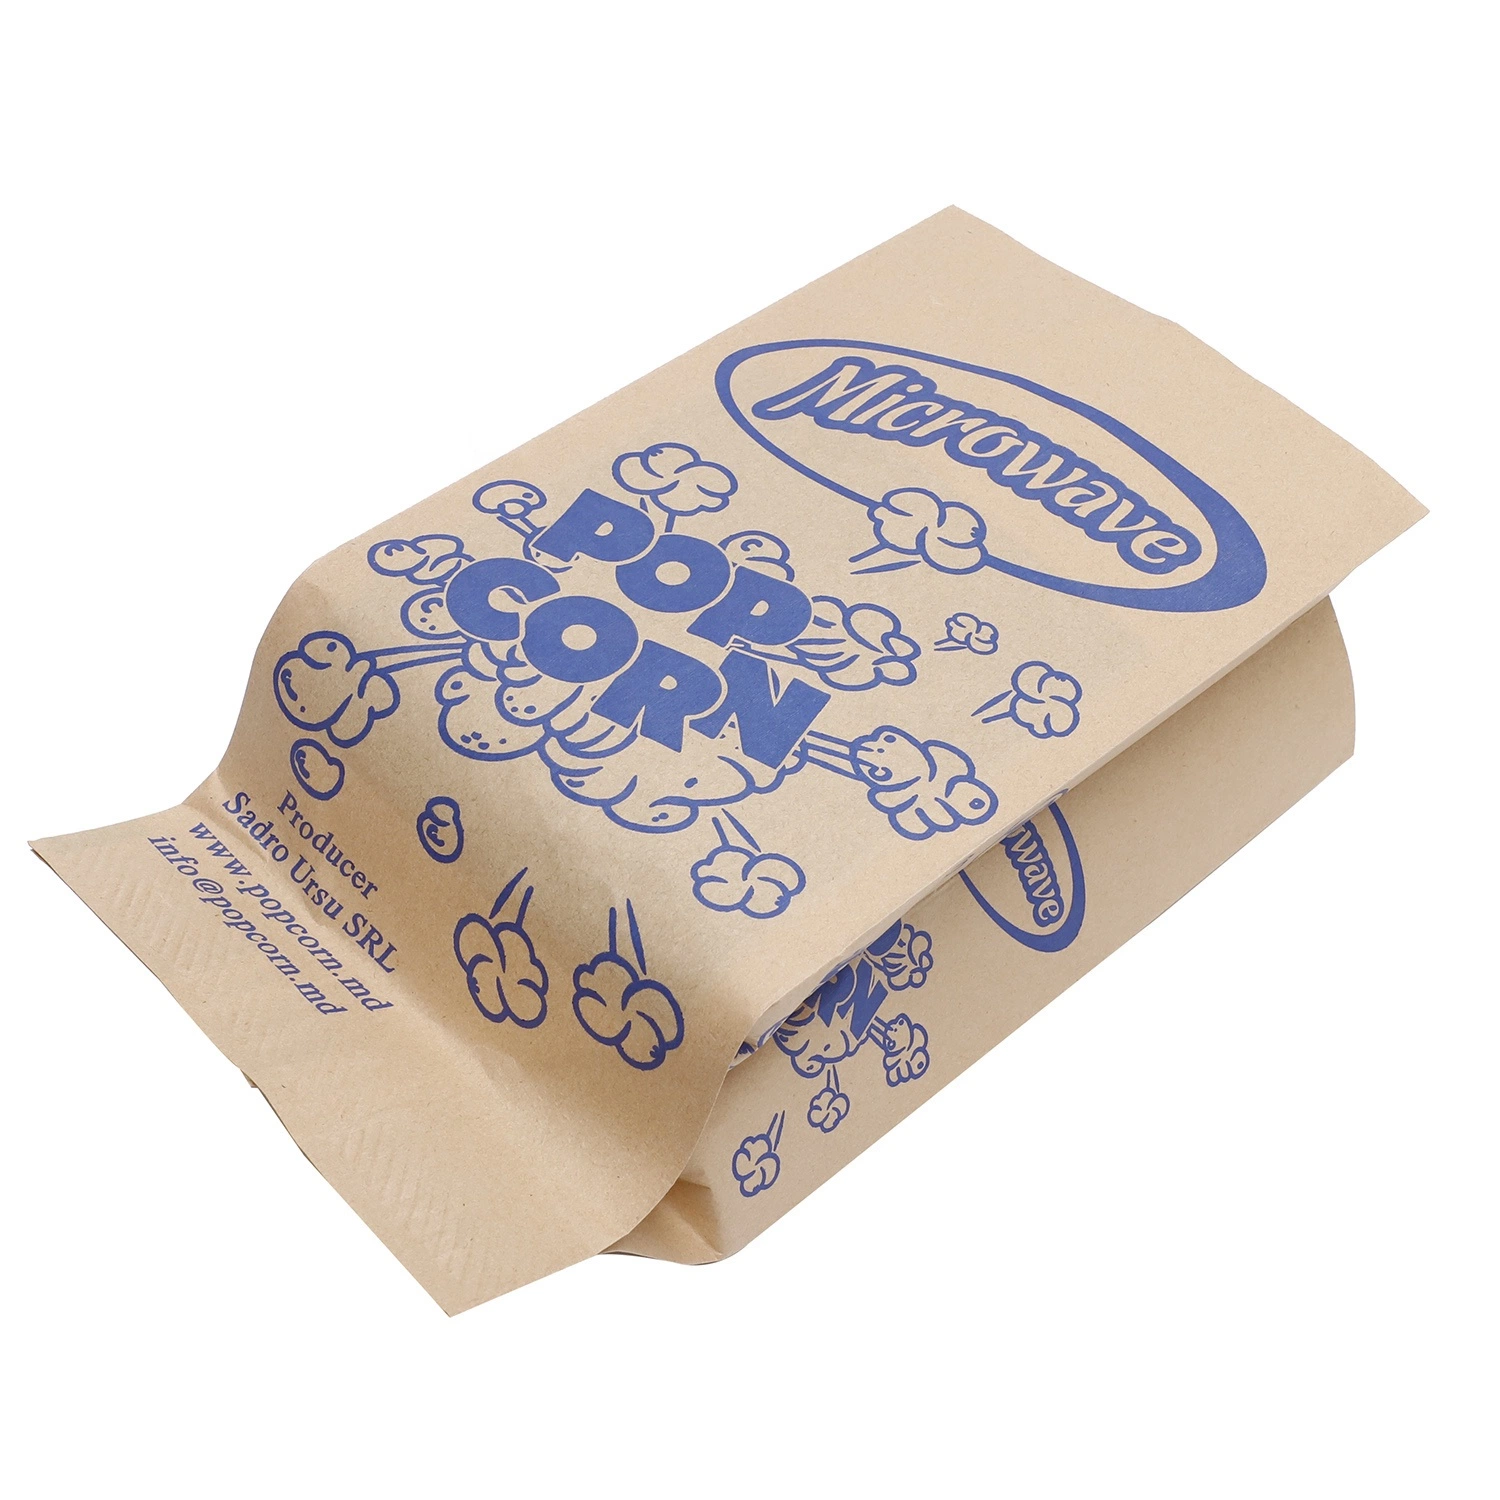 L'emballage alimentaire pfa libre des sacs en papier de haute qualité Chauffage Fluorine-Freemicrowave Explosion-Proof Popcorn sac d'emballage